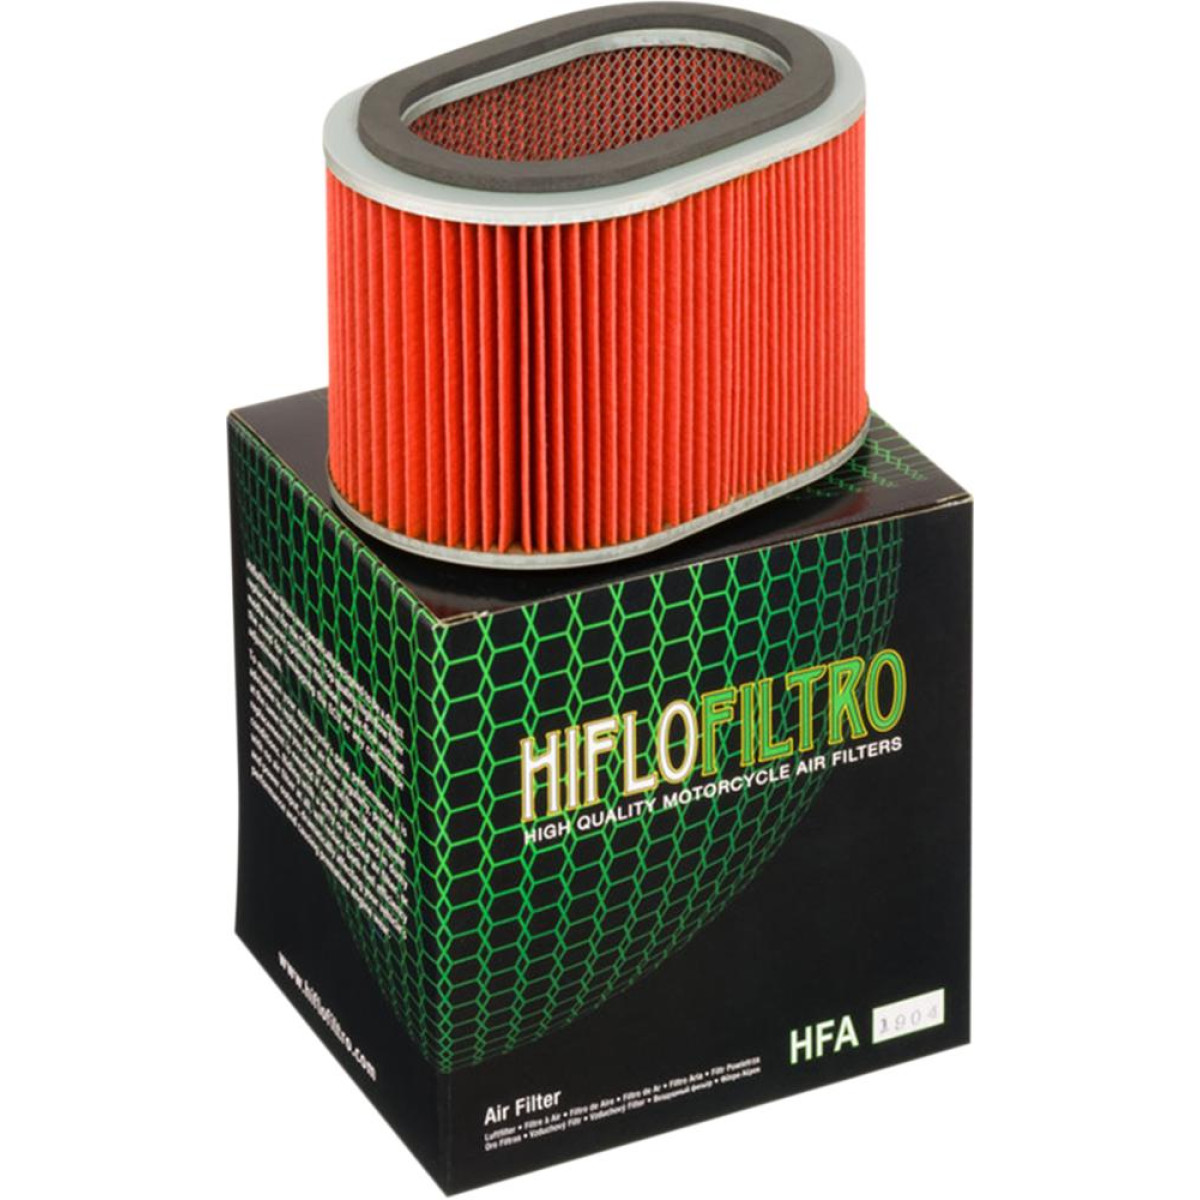 FILTRO AIRE HIFLOFILTRO HFA1904 HONDA GL1000 75/80